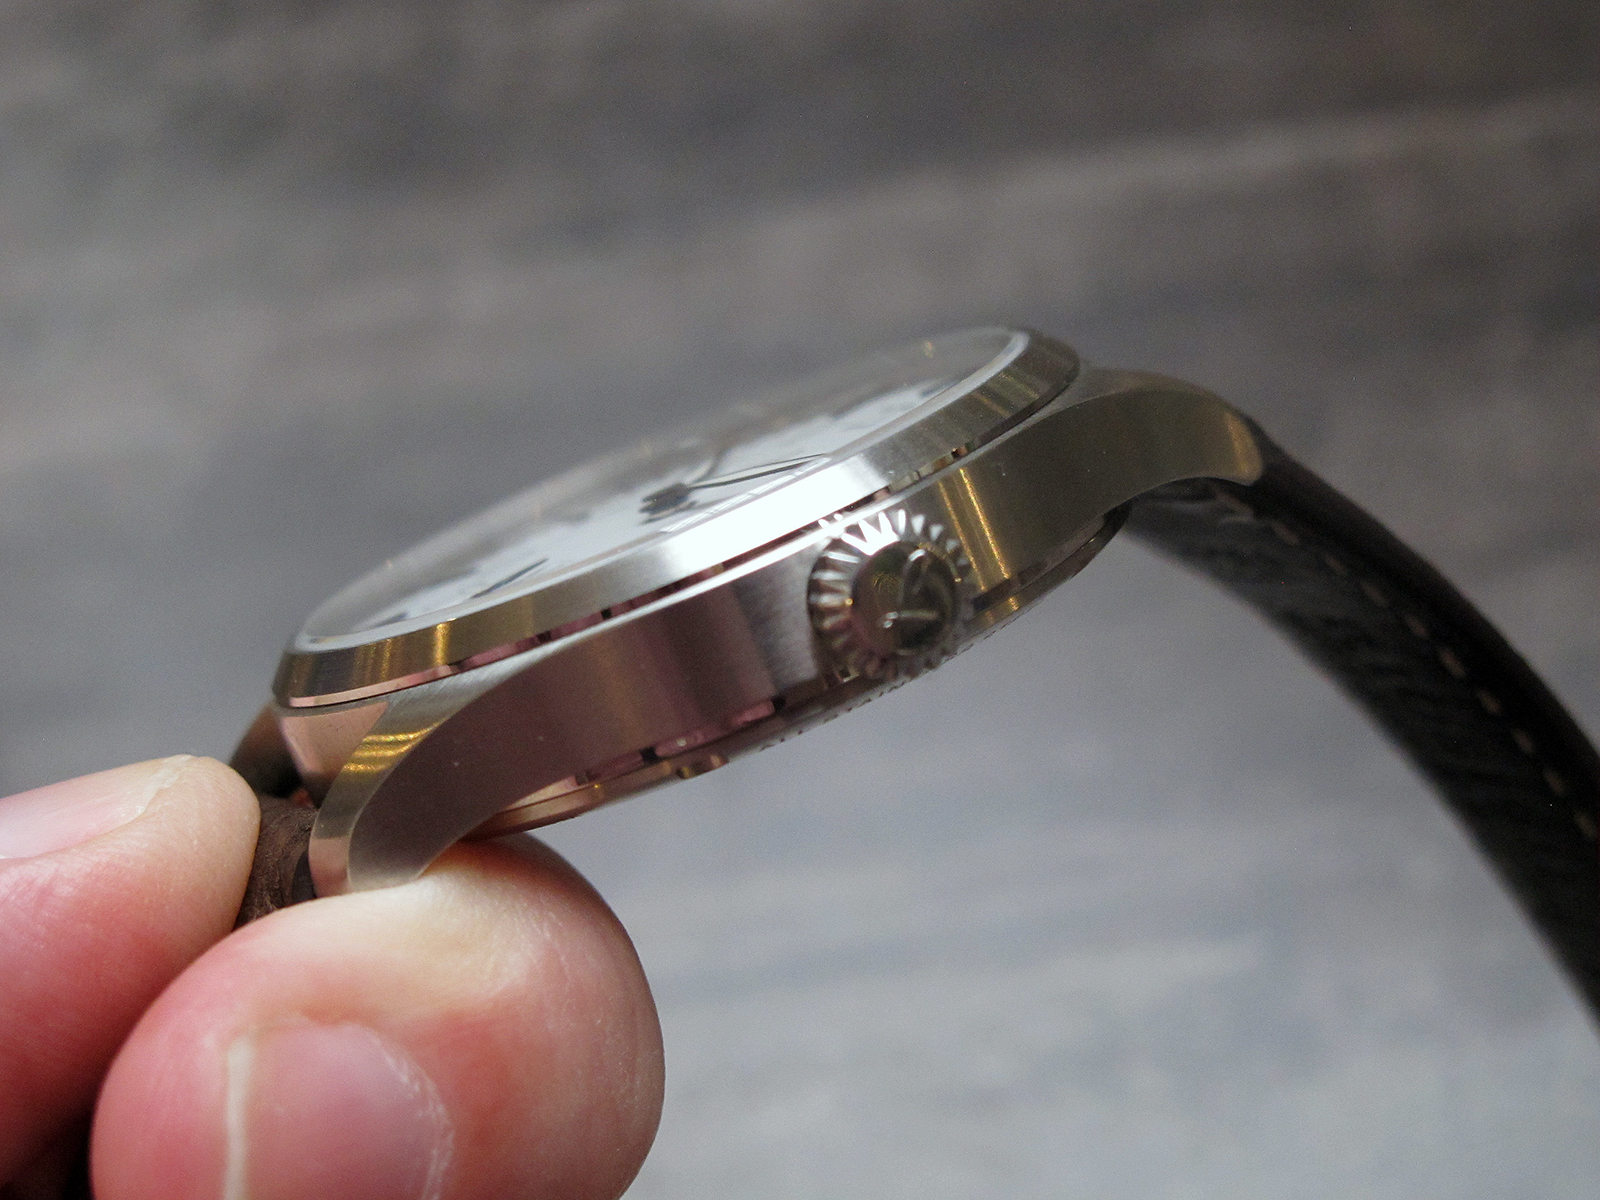 拉科弗里格有限公司-顶级版手表